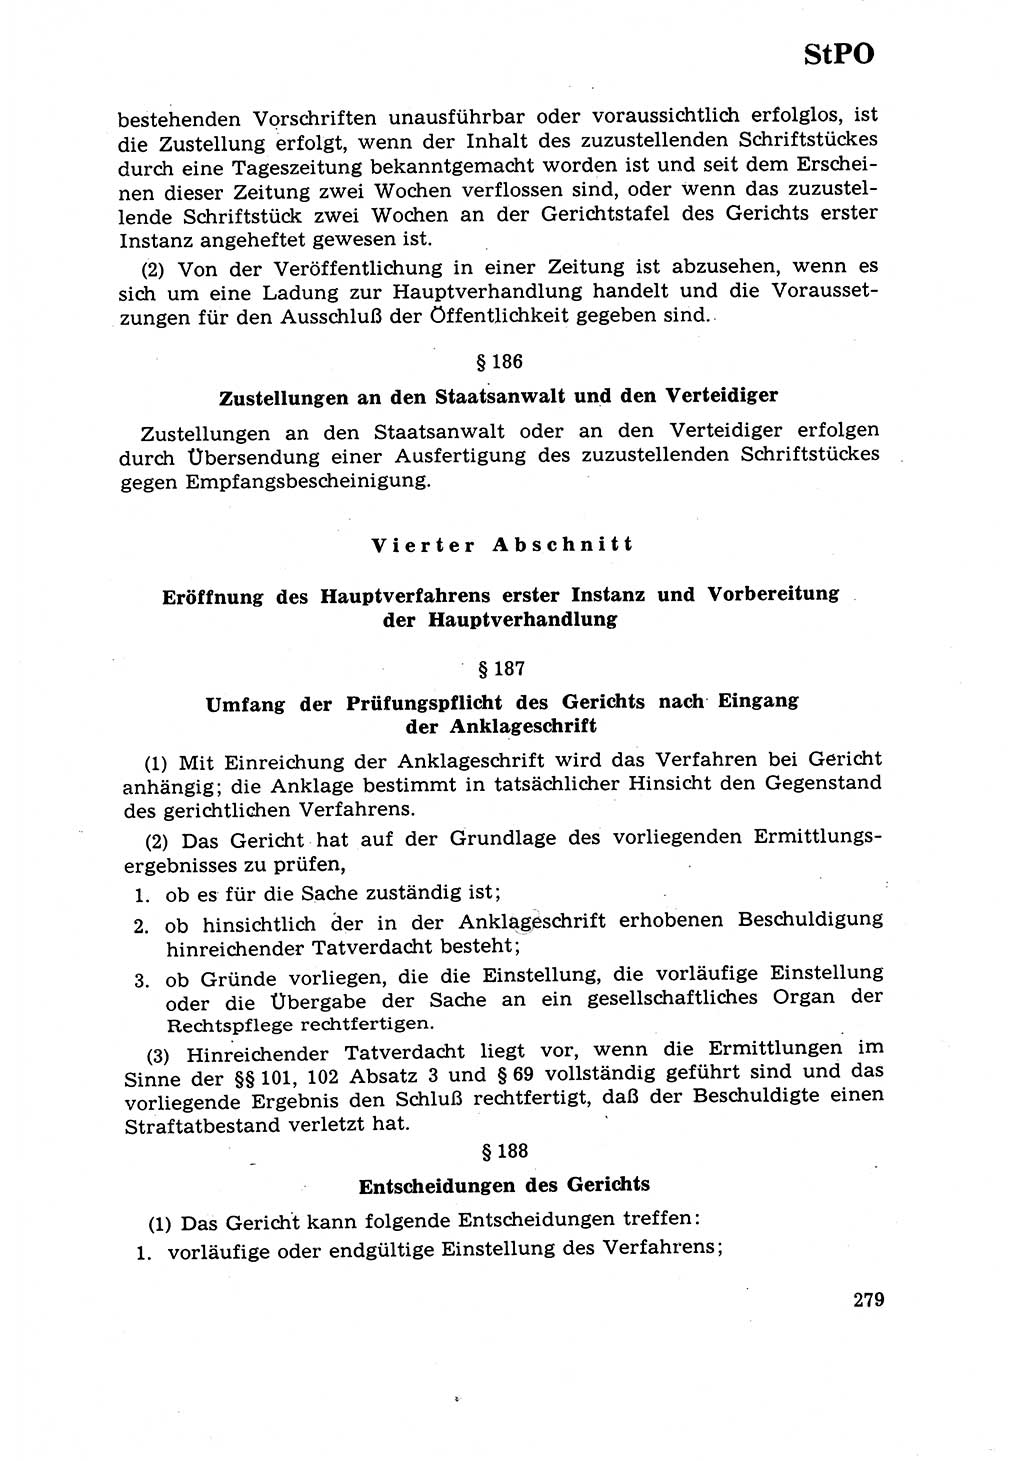 Strafrecht [Deutsche Demokratische Republik (DDR)] 1968, Seite 279 (Strafr. DDR 1968, S. 279)